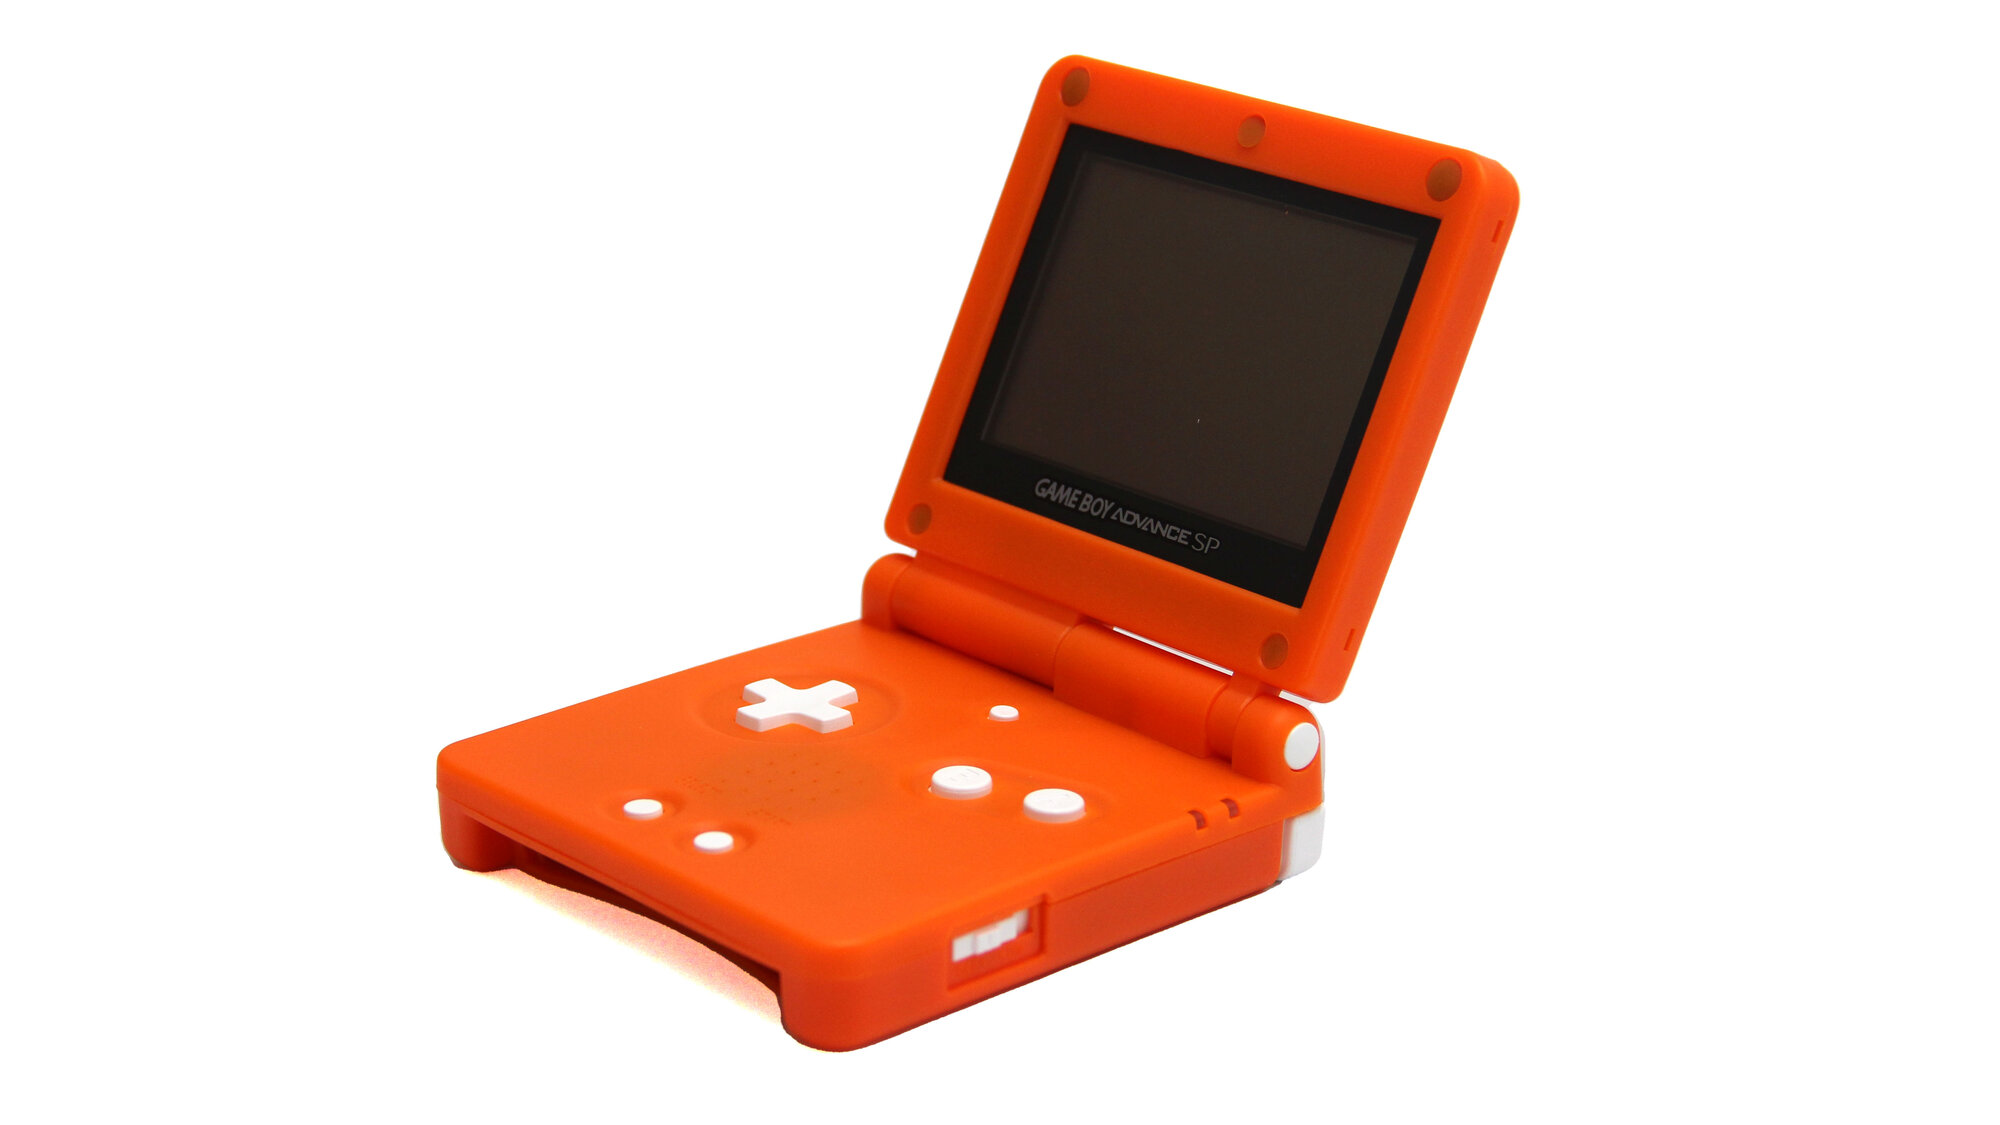 Игровая приставка Nintendo Game Boy Advance SP (AGS-001) One Piece В коробке